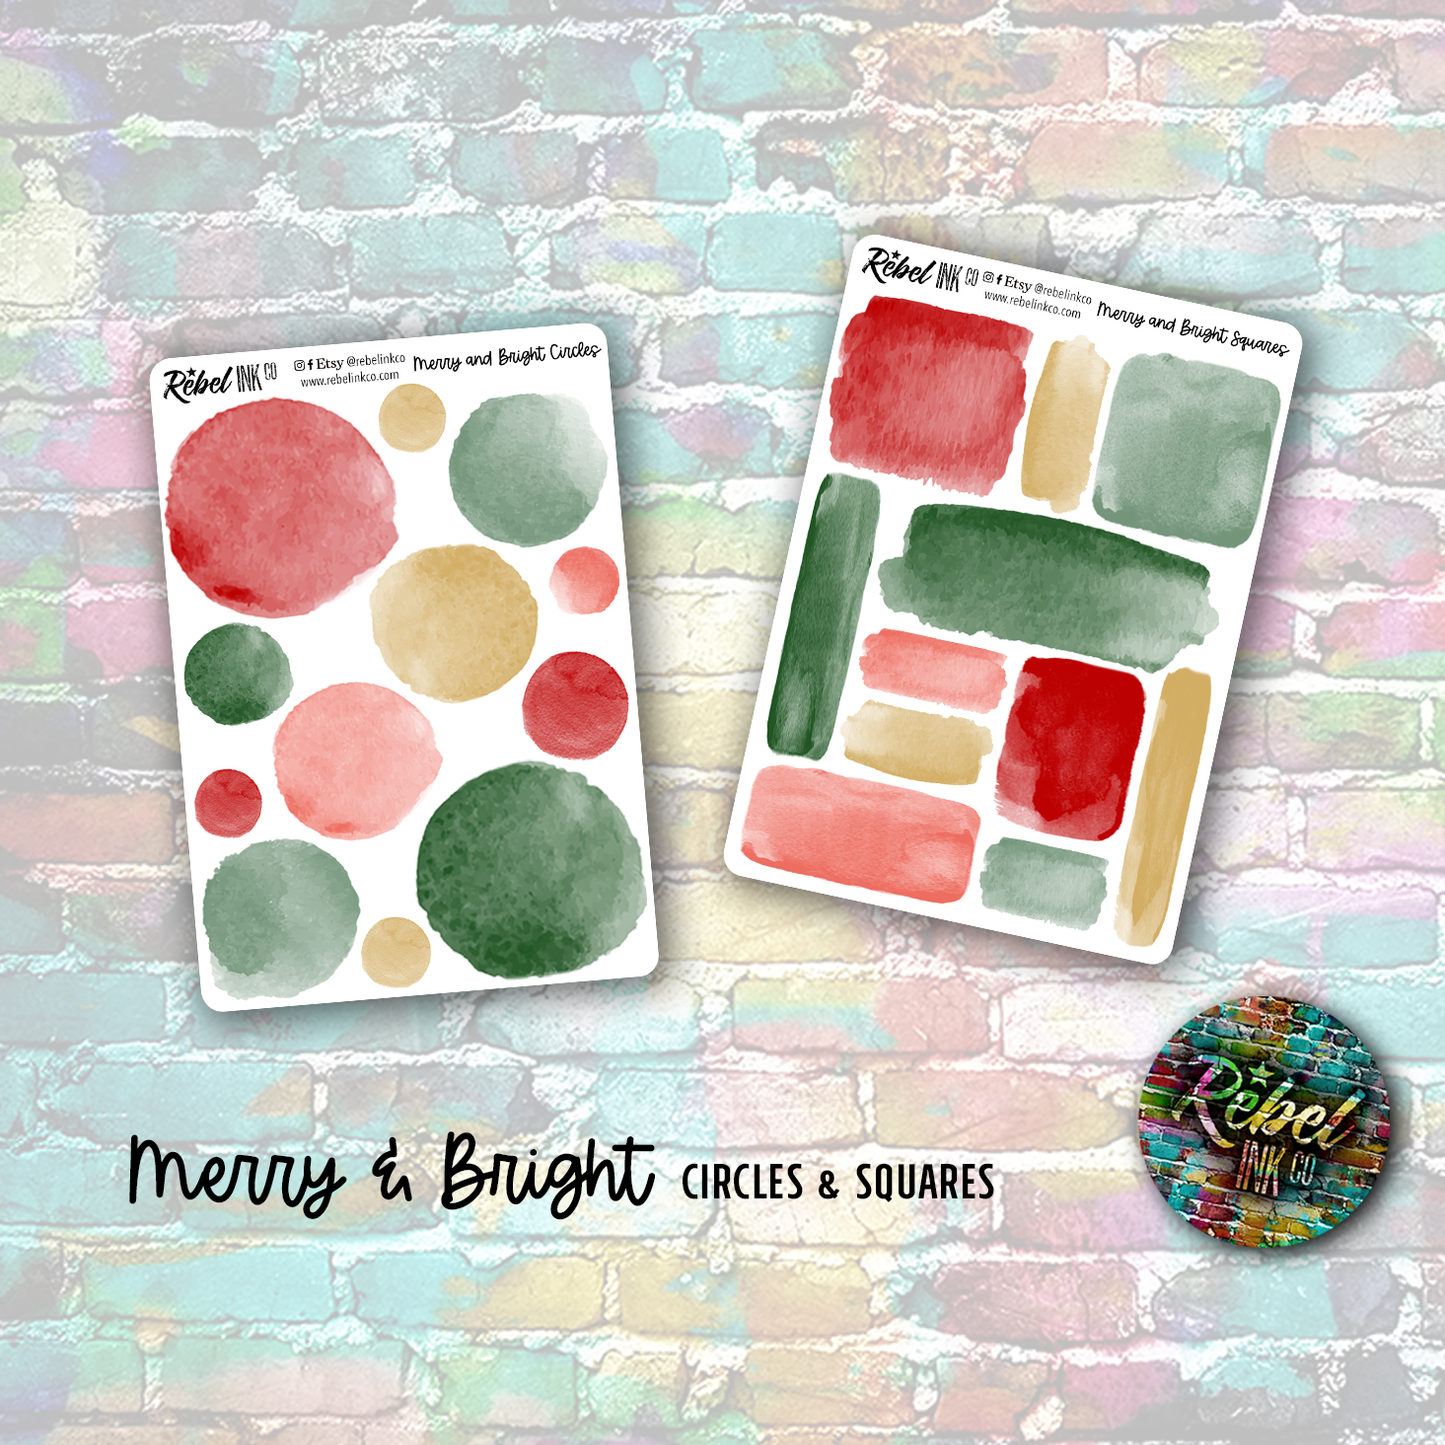 Merry & Bright - Journalling Kit